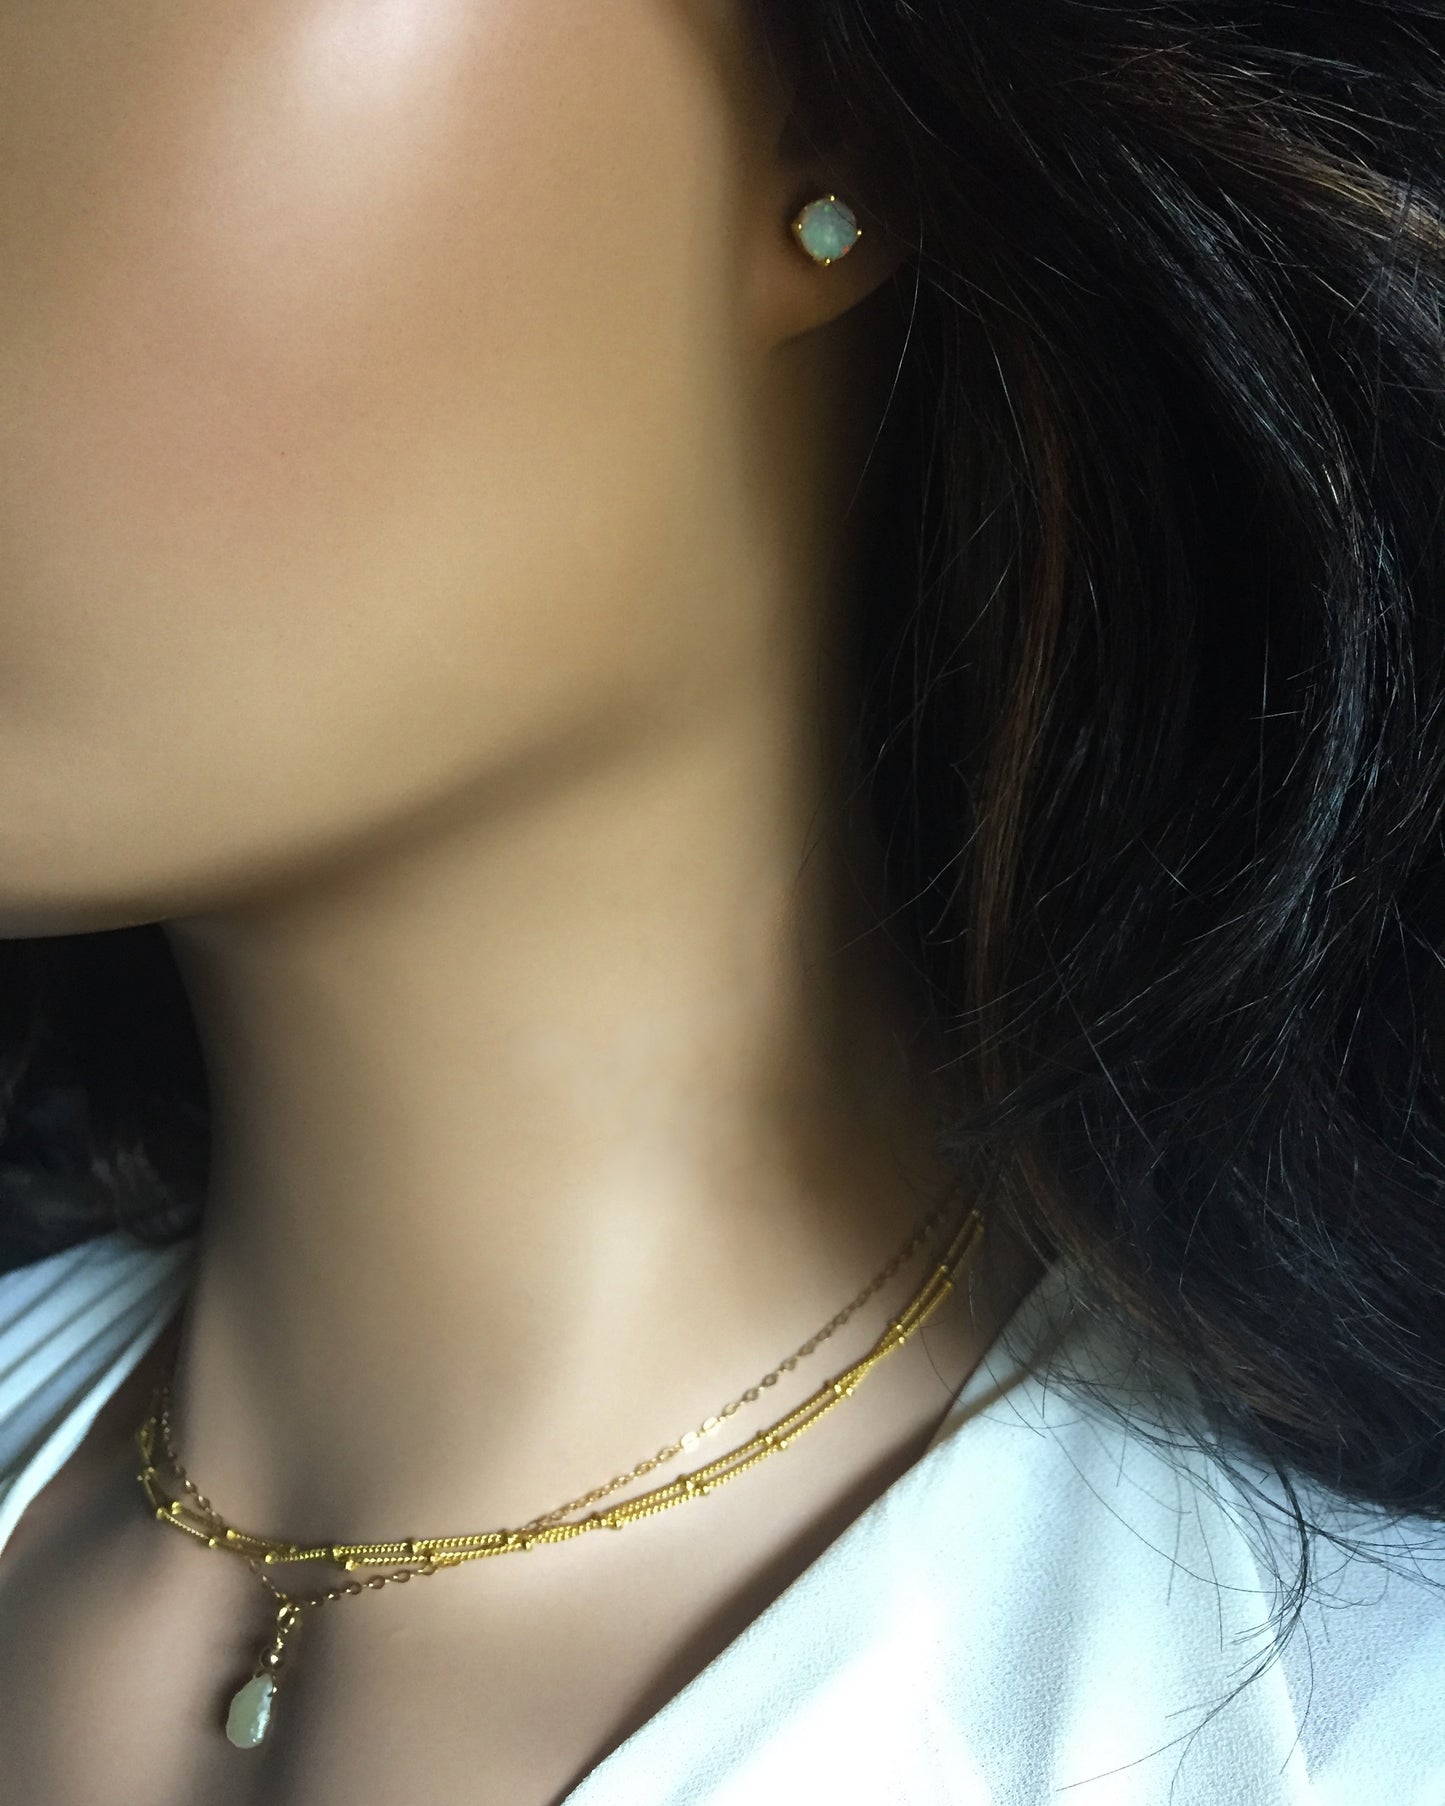 Gold Opal Stud Earrings | Small White Opal Stud Earrings | Delicate Stud Earrings | IB Jewelry